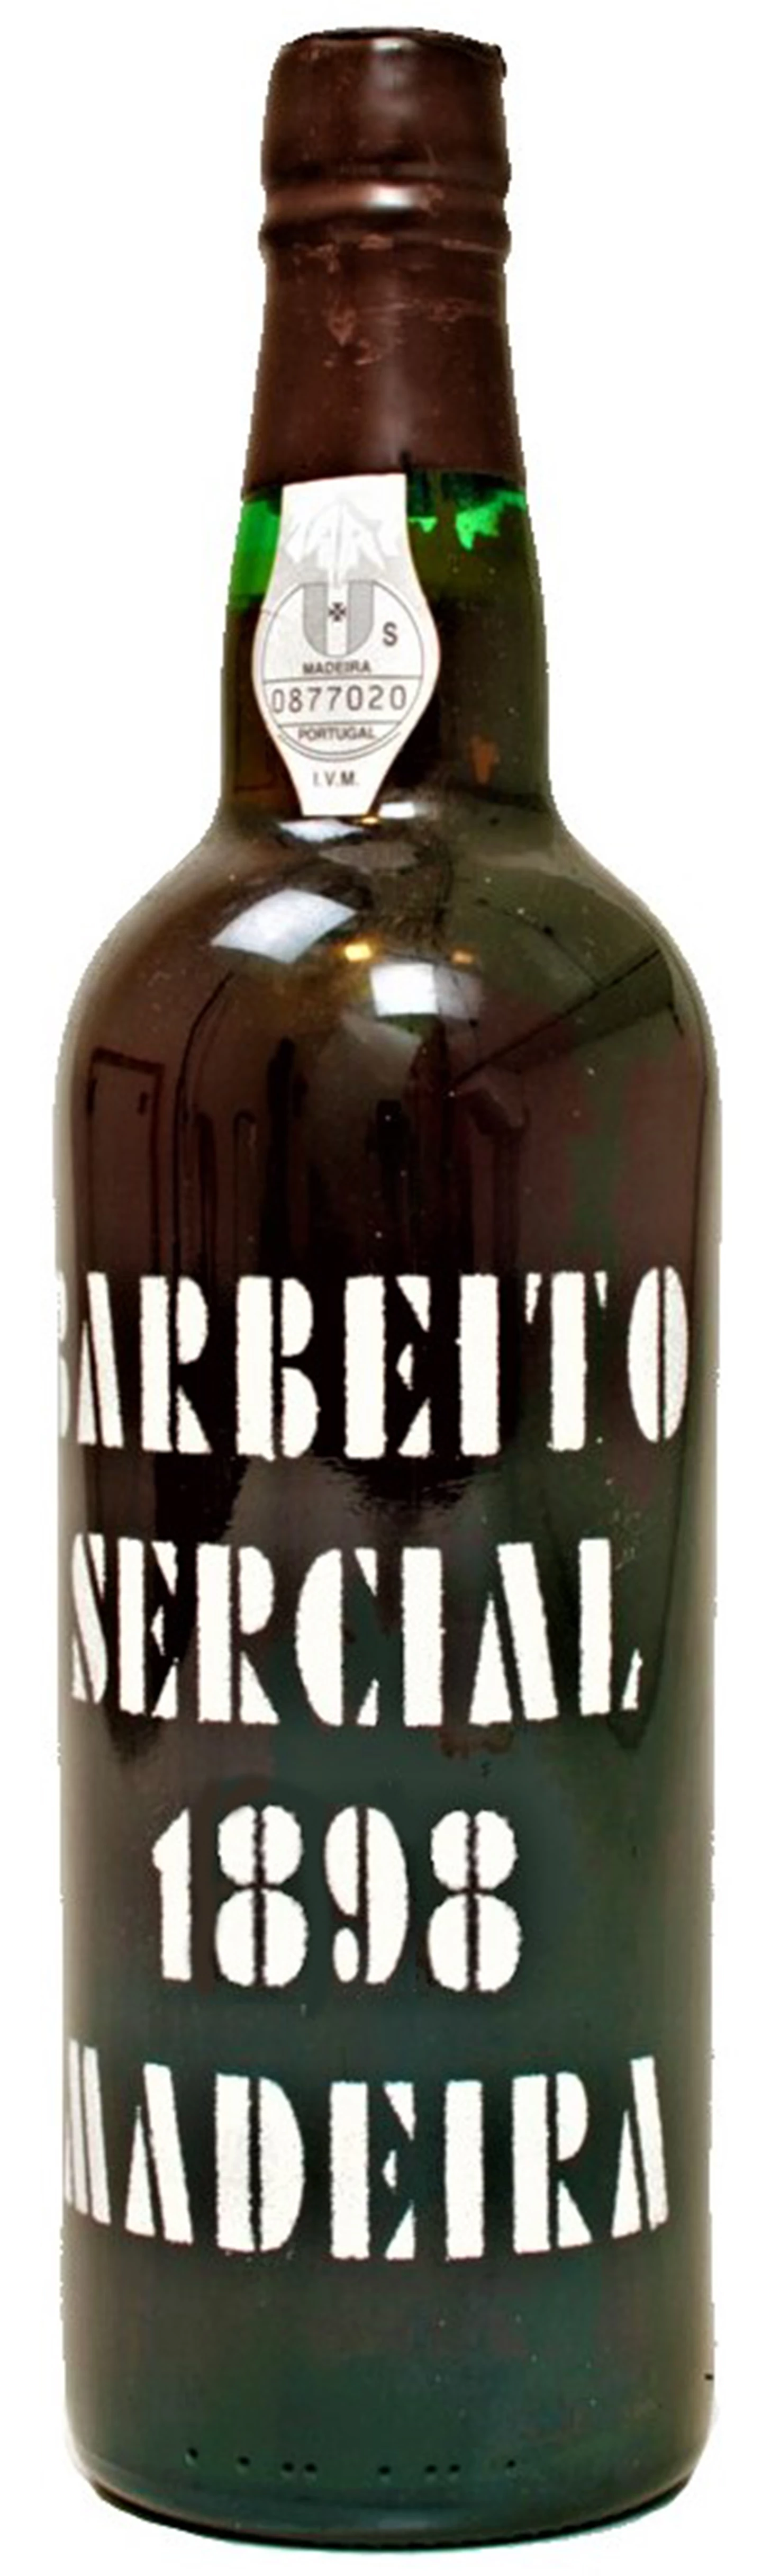 Barbeito_Madeira-Sercial-1898